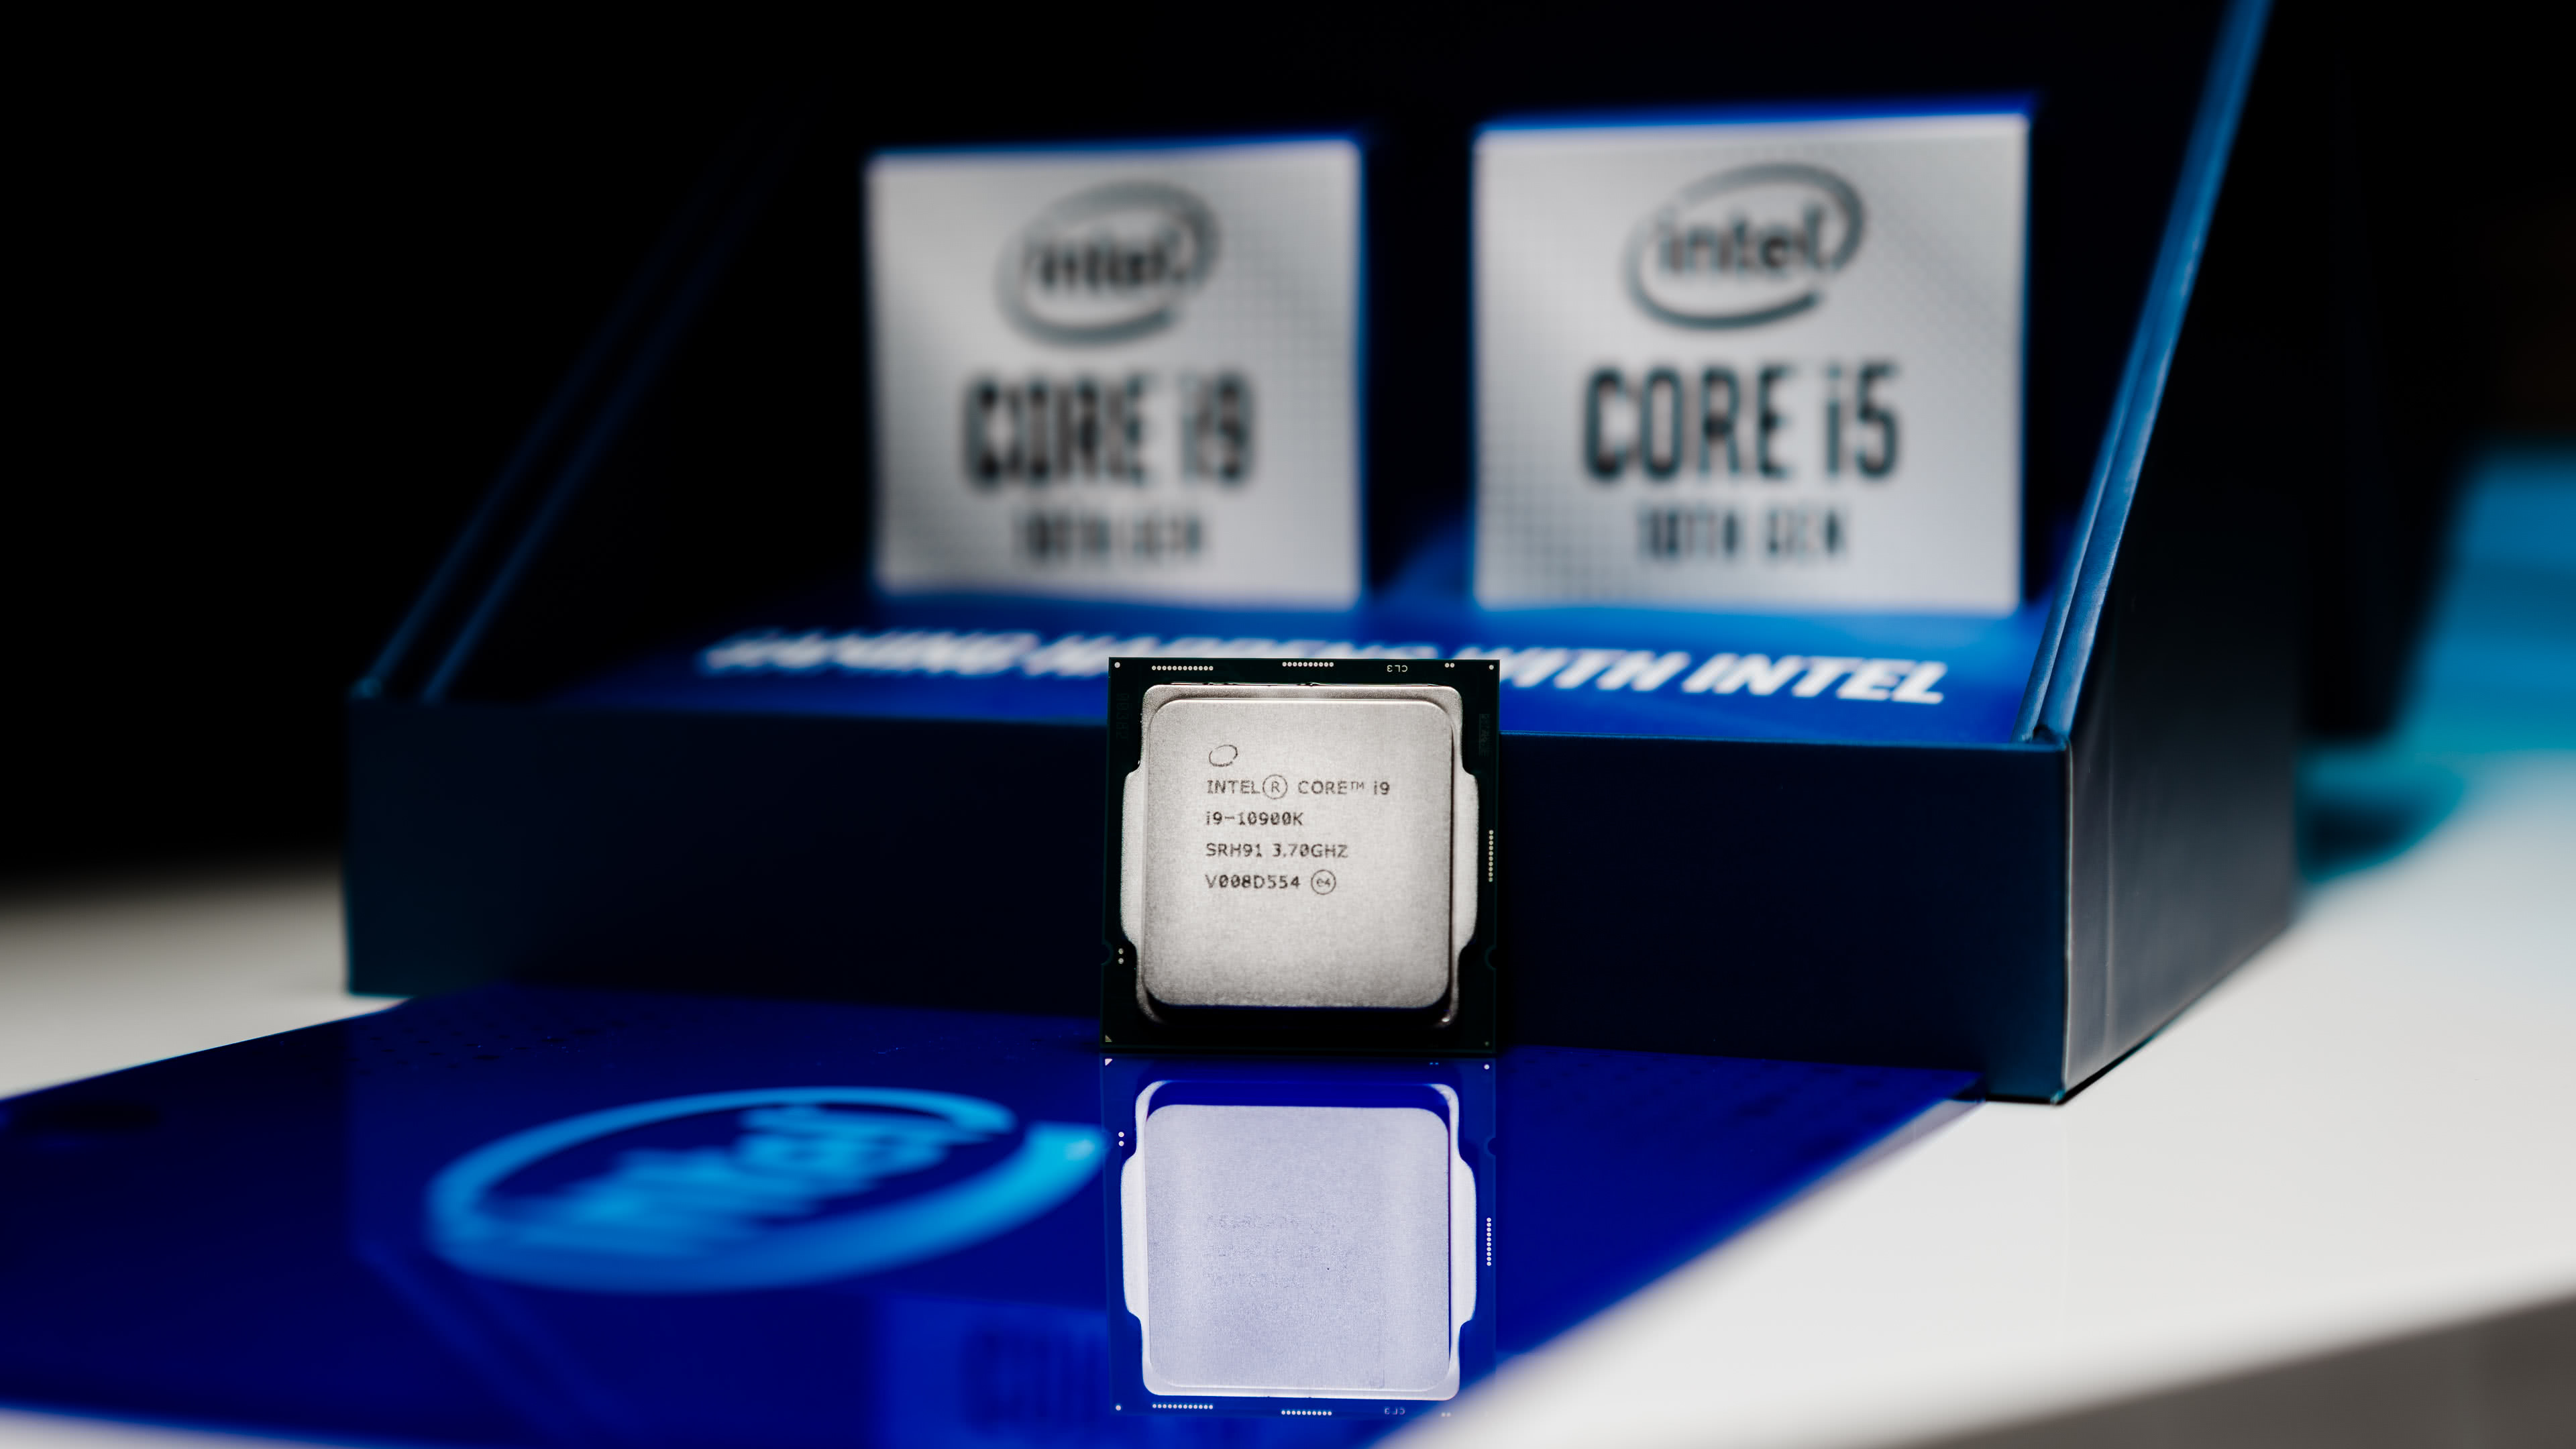 Computer CPU Intel Core I9 10900K Desktop Processor 10 Cores 5.3